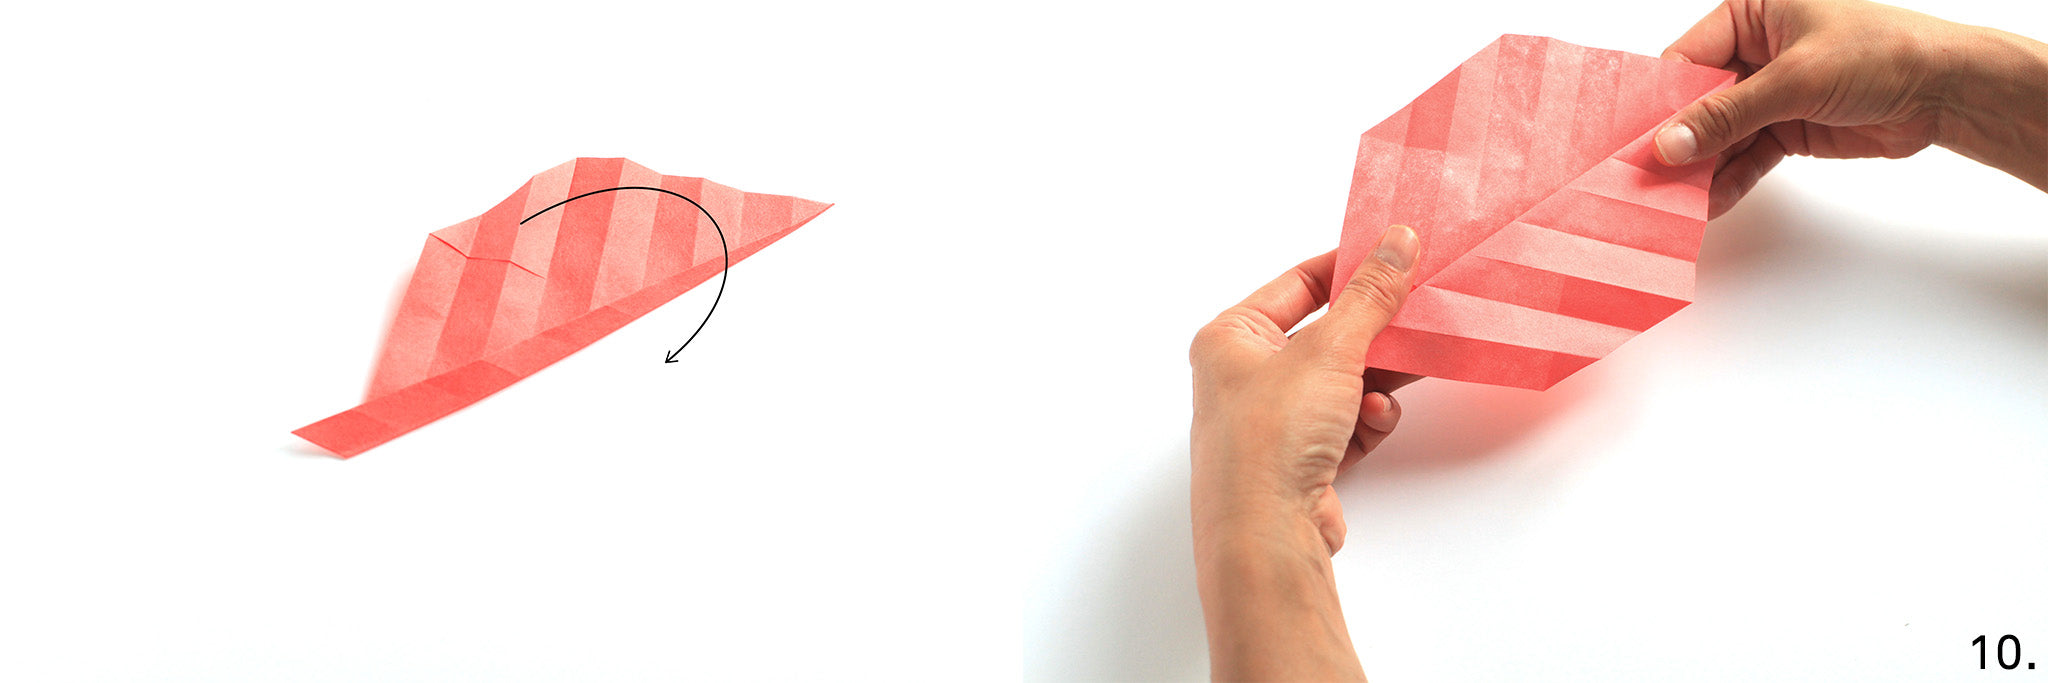 article-tuto-feuille-origami-etape-10